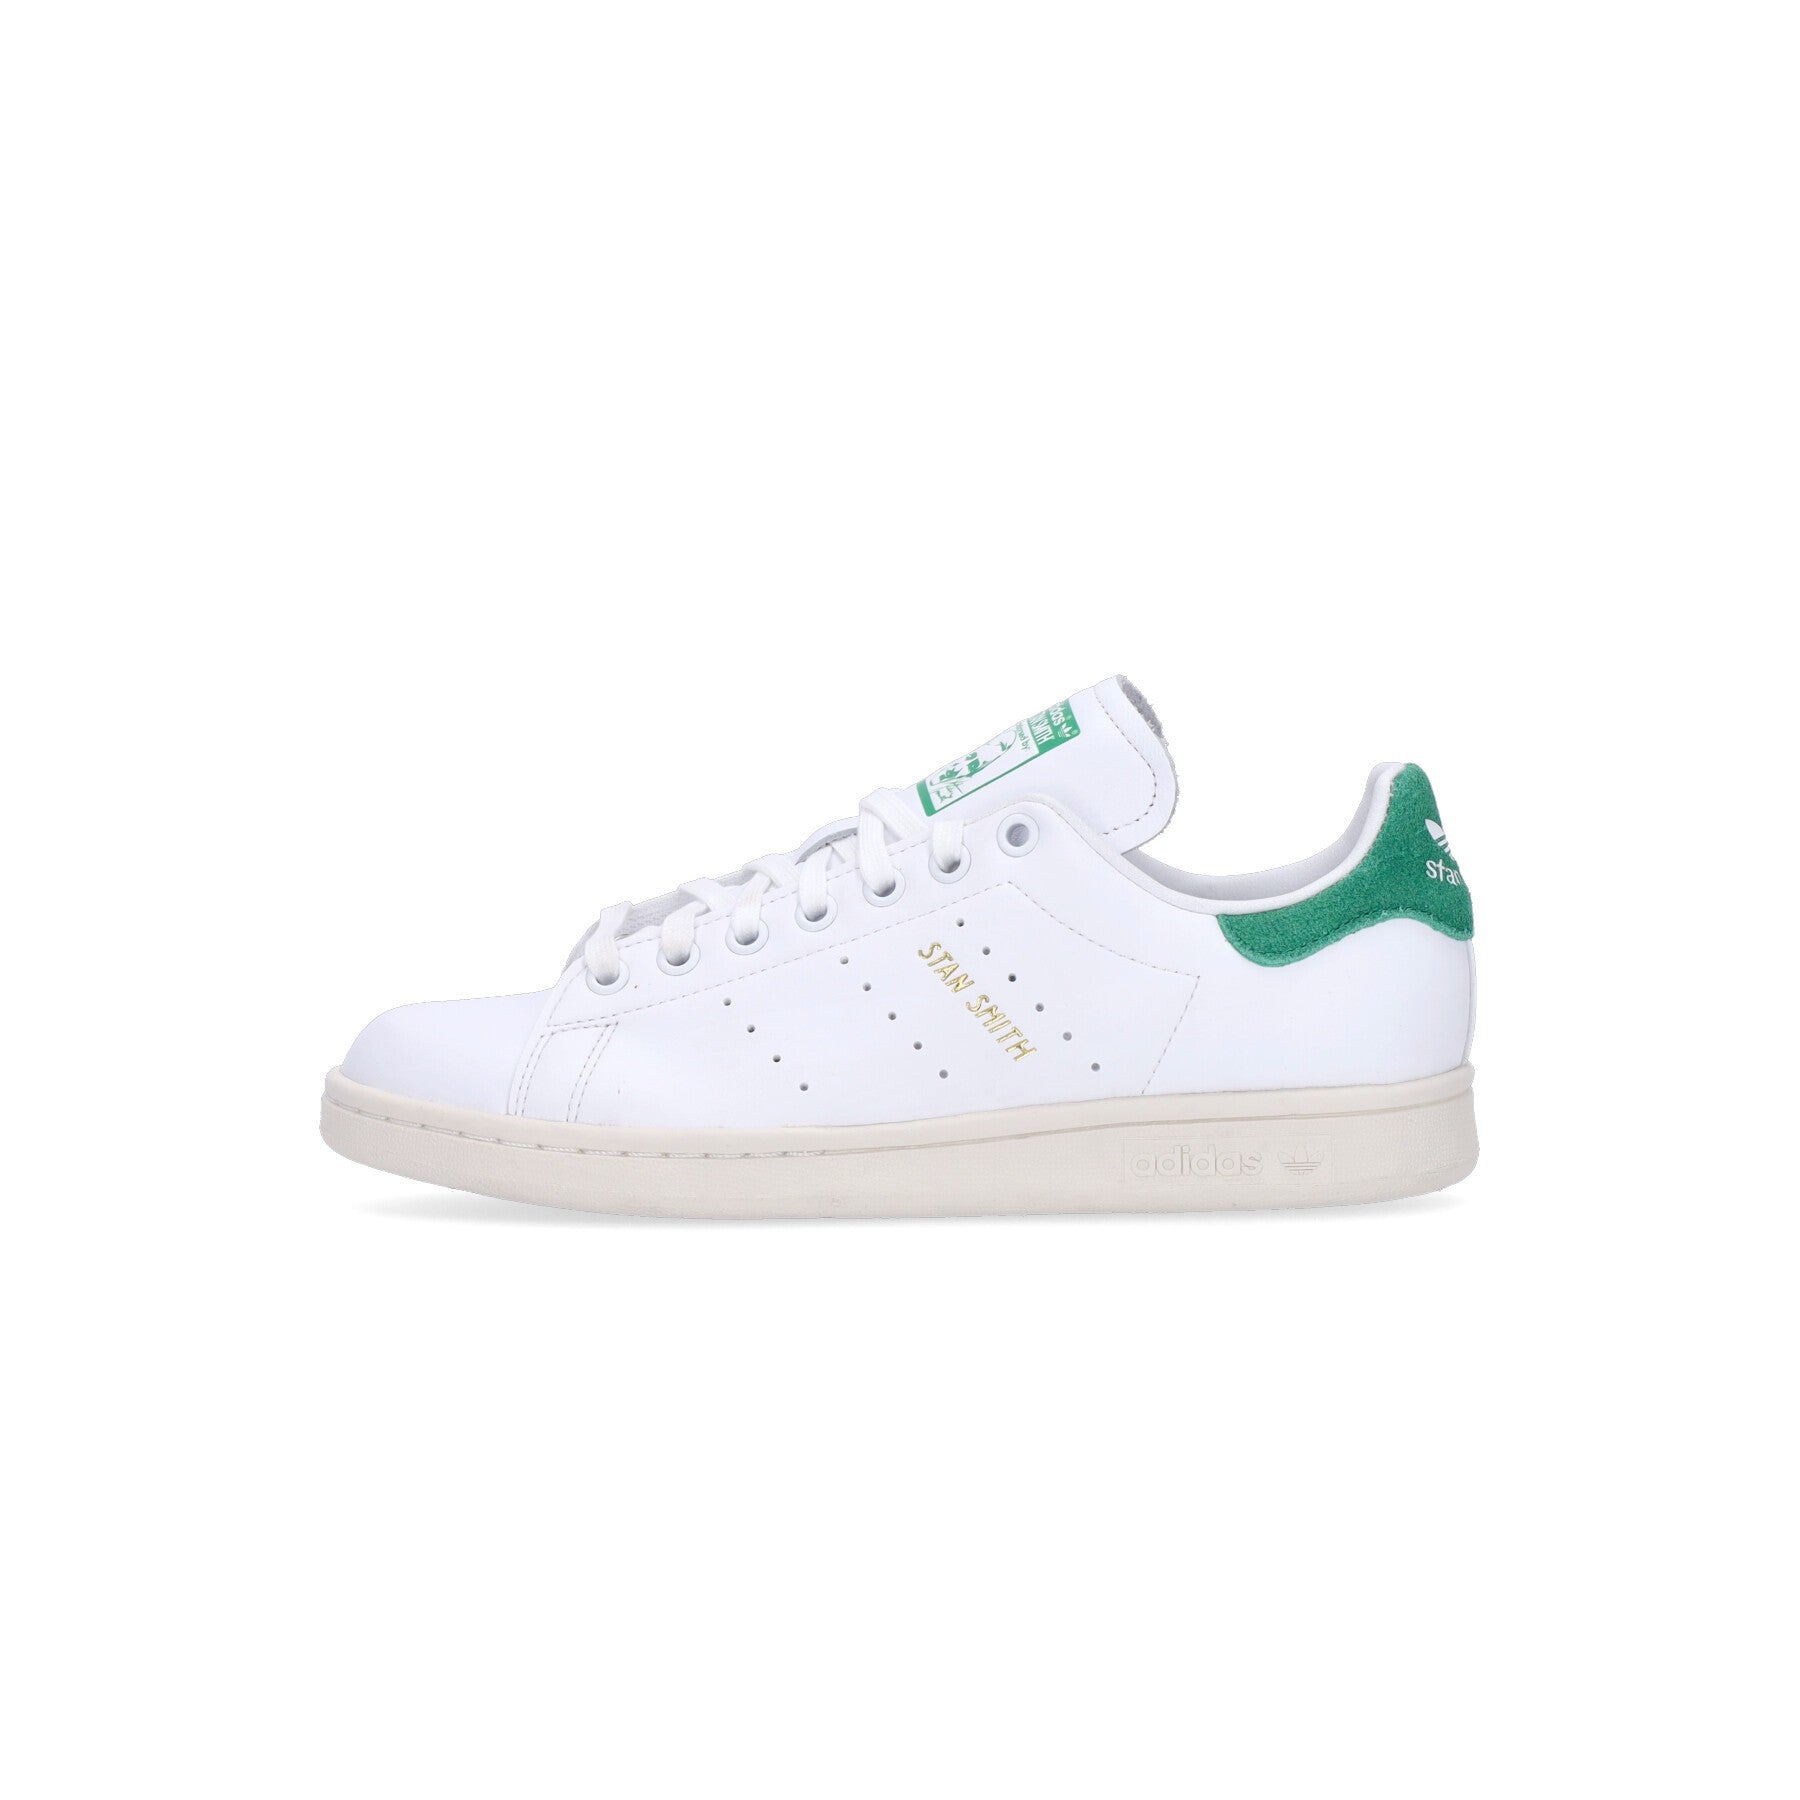 Adidas, Scarpa Bassa Uomo Stan Smith, Cloud White/green/off White